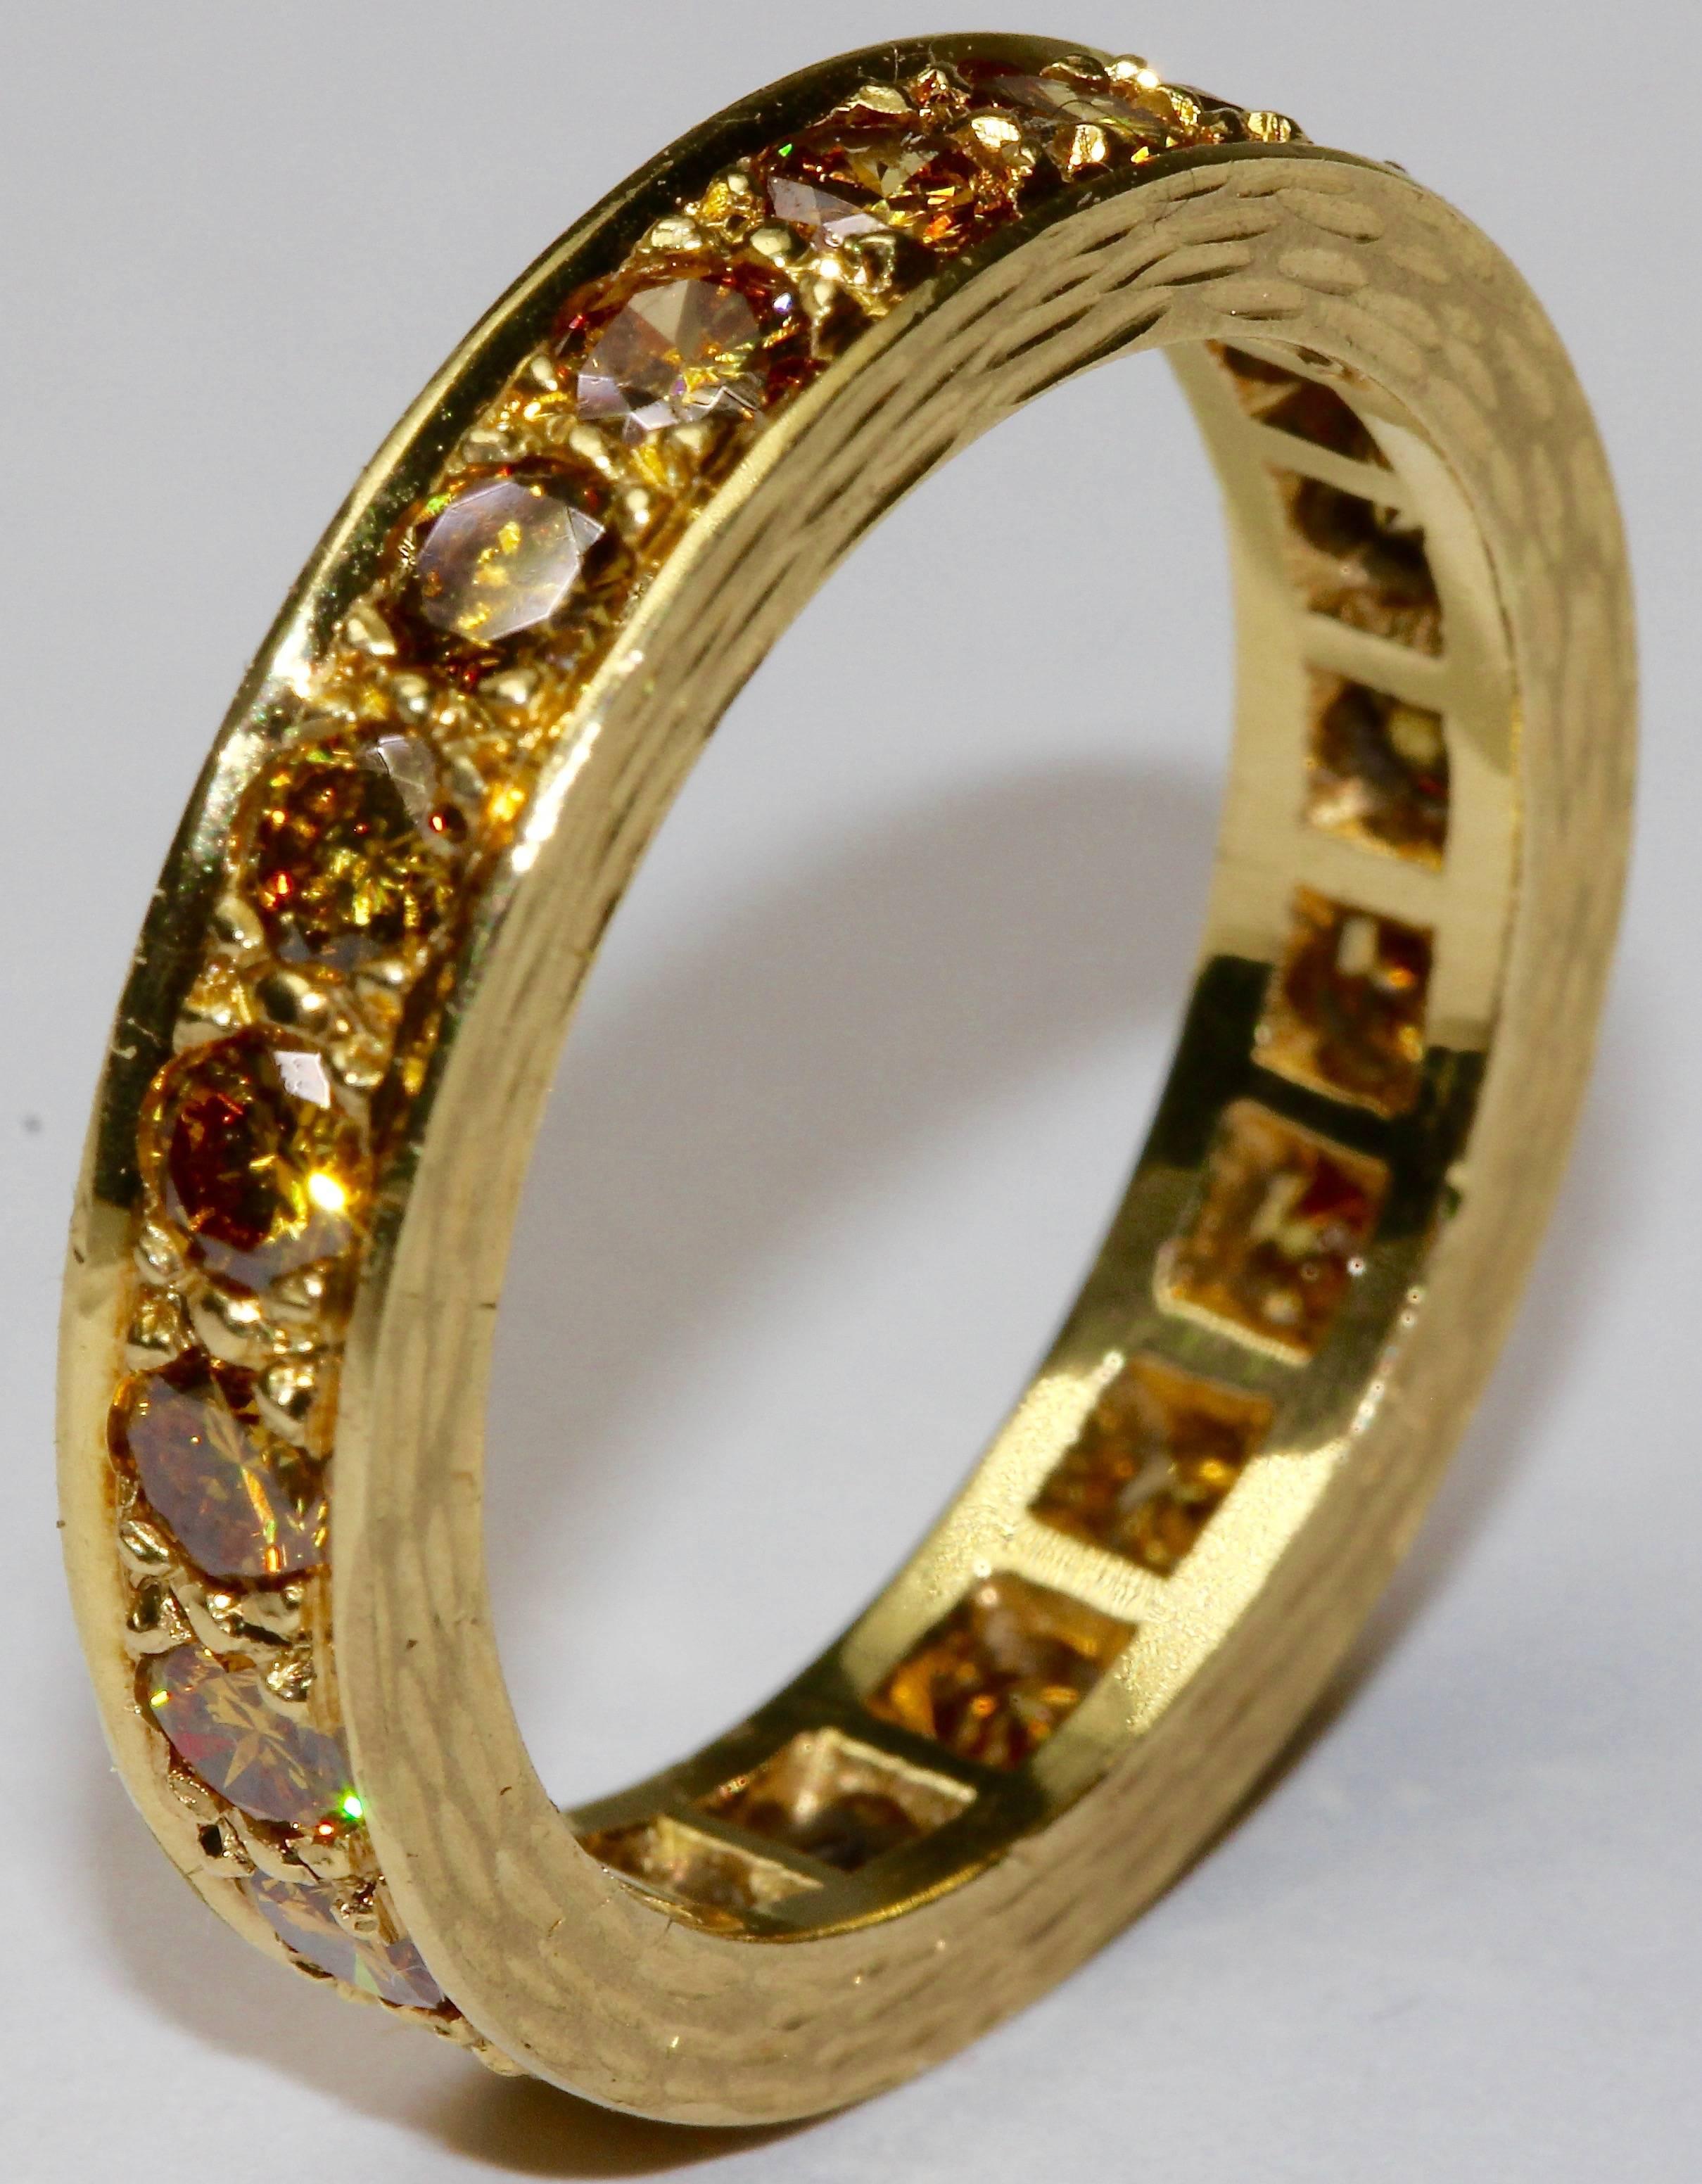 Fantastischer und sehr moderner Memory-Ring (Ewigkeitsring), besetzt mit 20 champagnerfarbenen Diamanten mit einem Gesamtgewicht von etwa zwei Karat! (IF an VSI)
14 Karat Gelbgold.

Äußerer Durchmesser: ca. 22 mm
Innendurchmesser: ca. 17,5 mm
Tiefe: